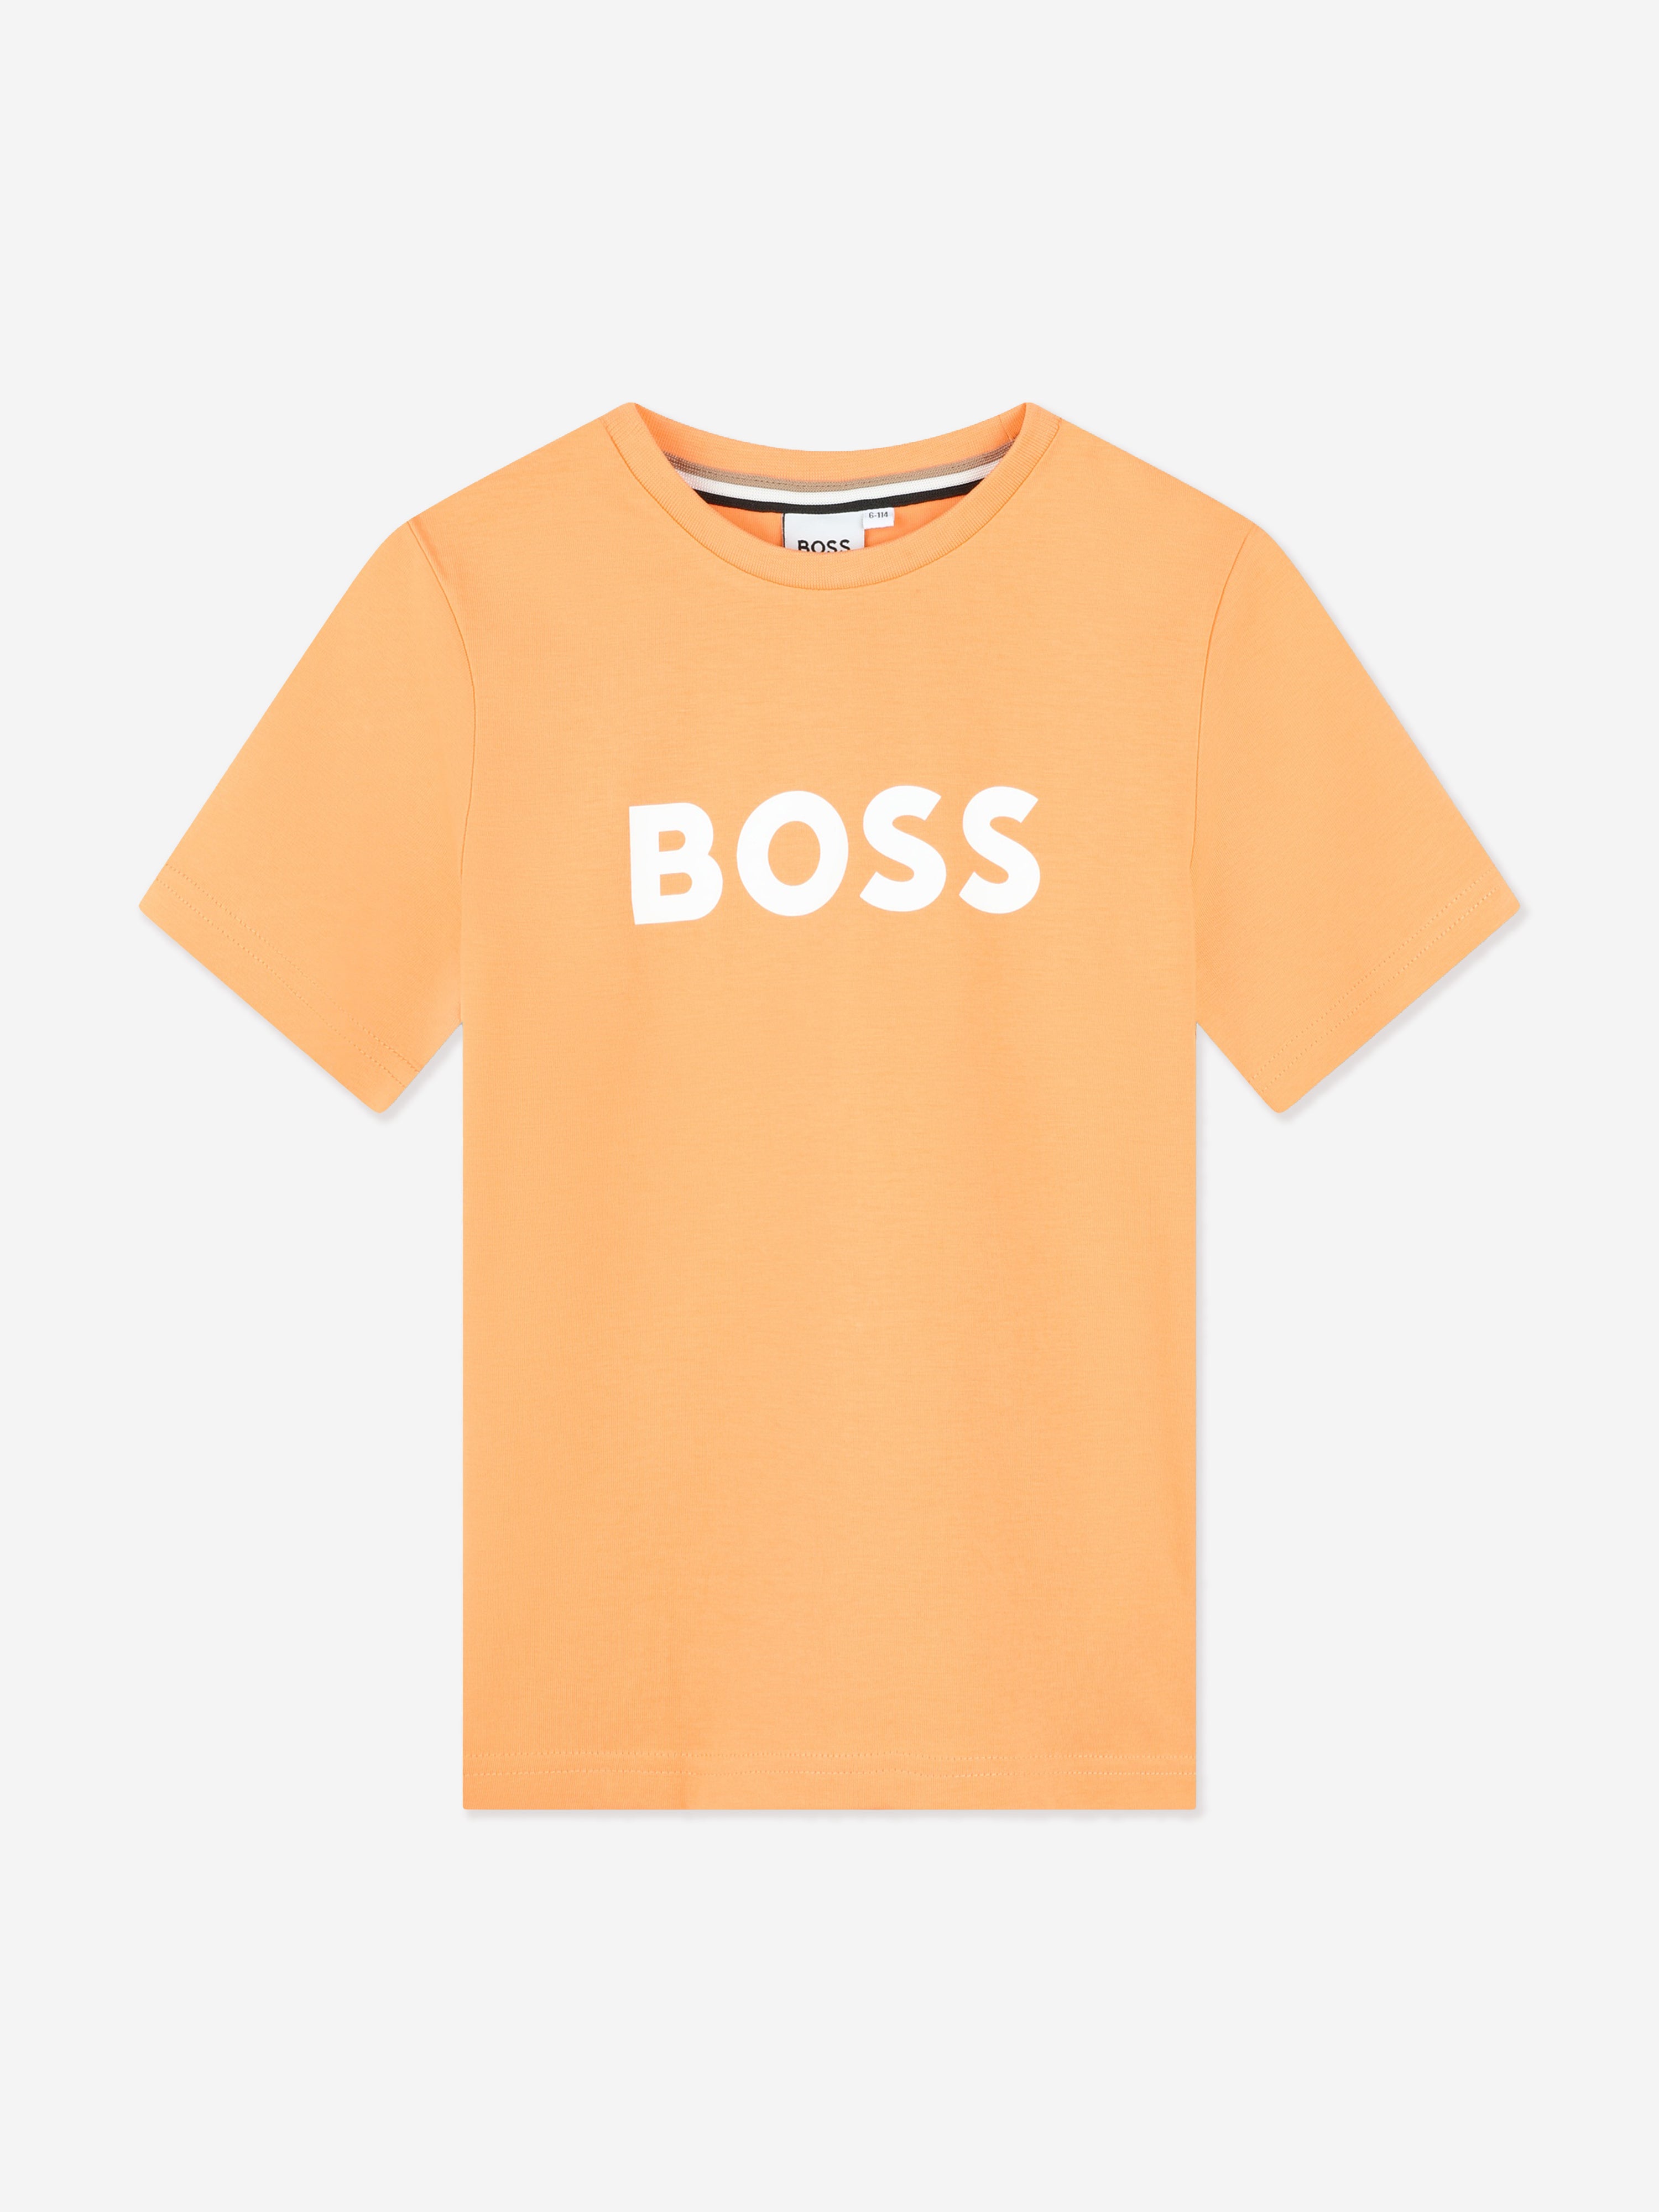 Hugo Boss Kids' Boys Logo Print T-shirt In Orange